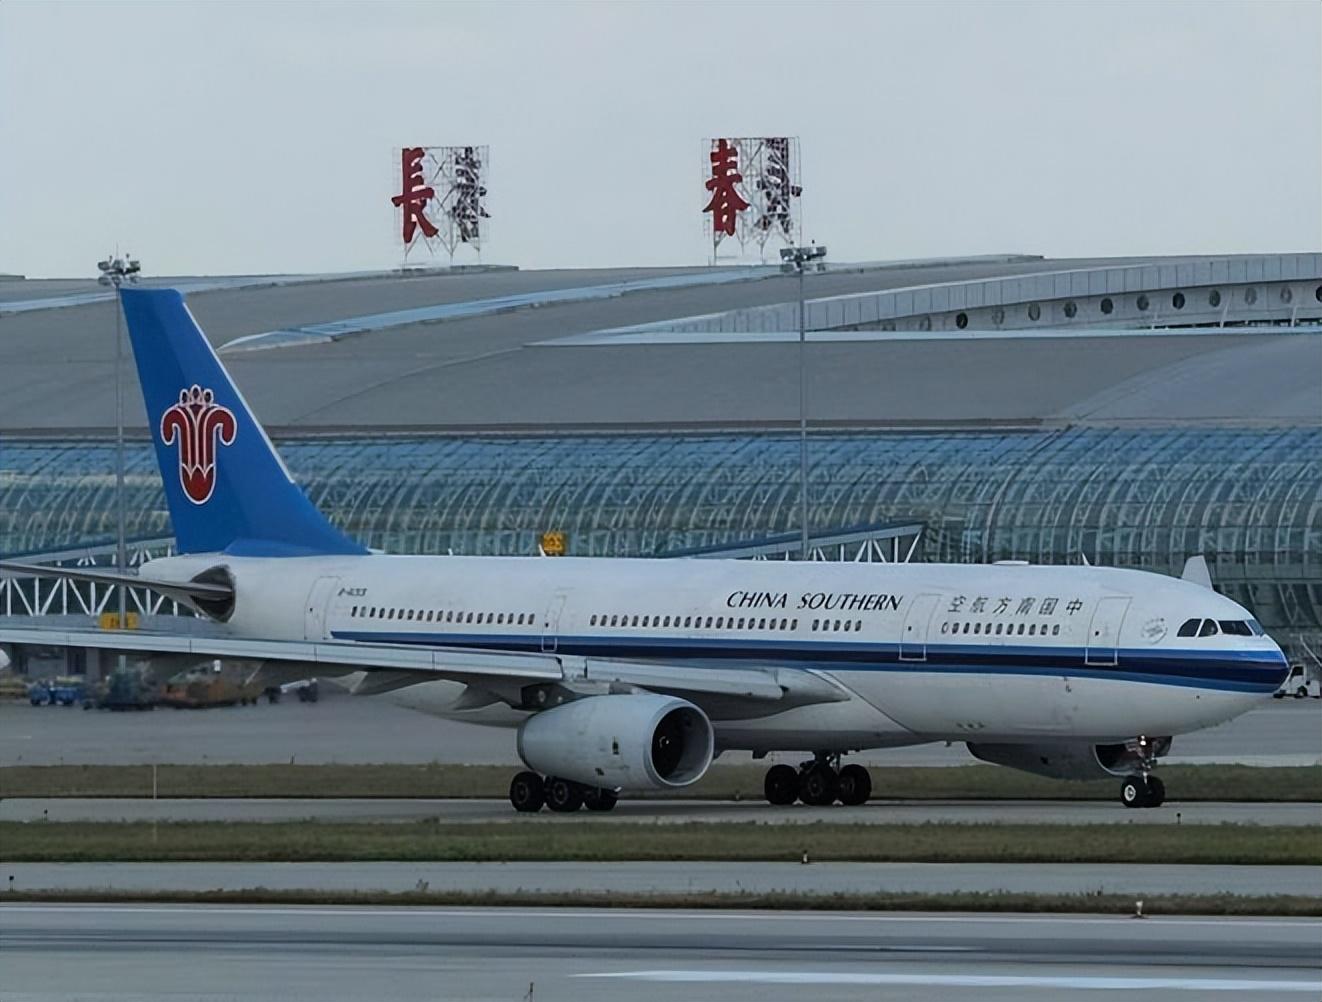 龙嘉机场logo图片